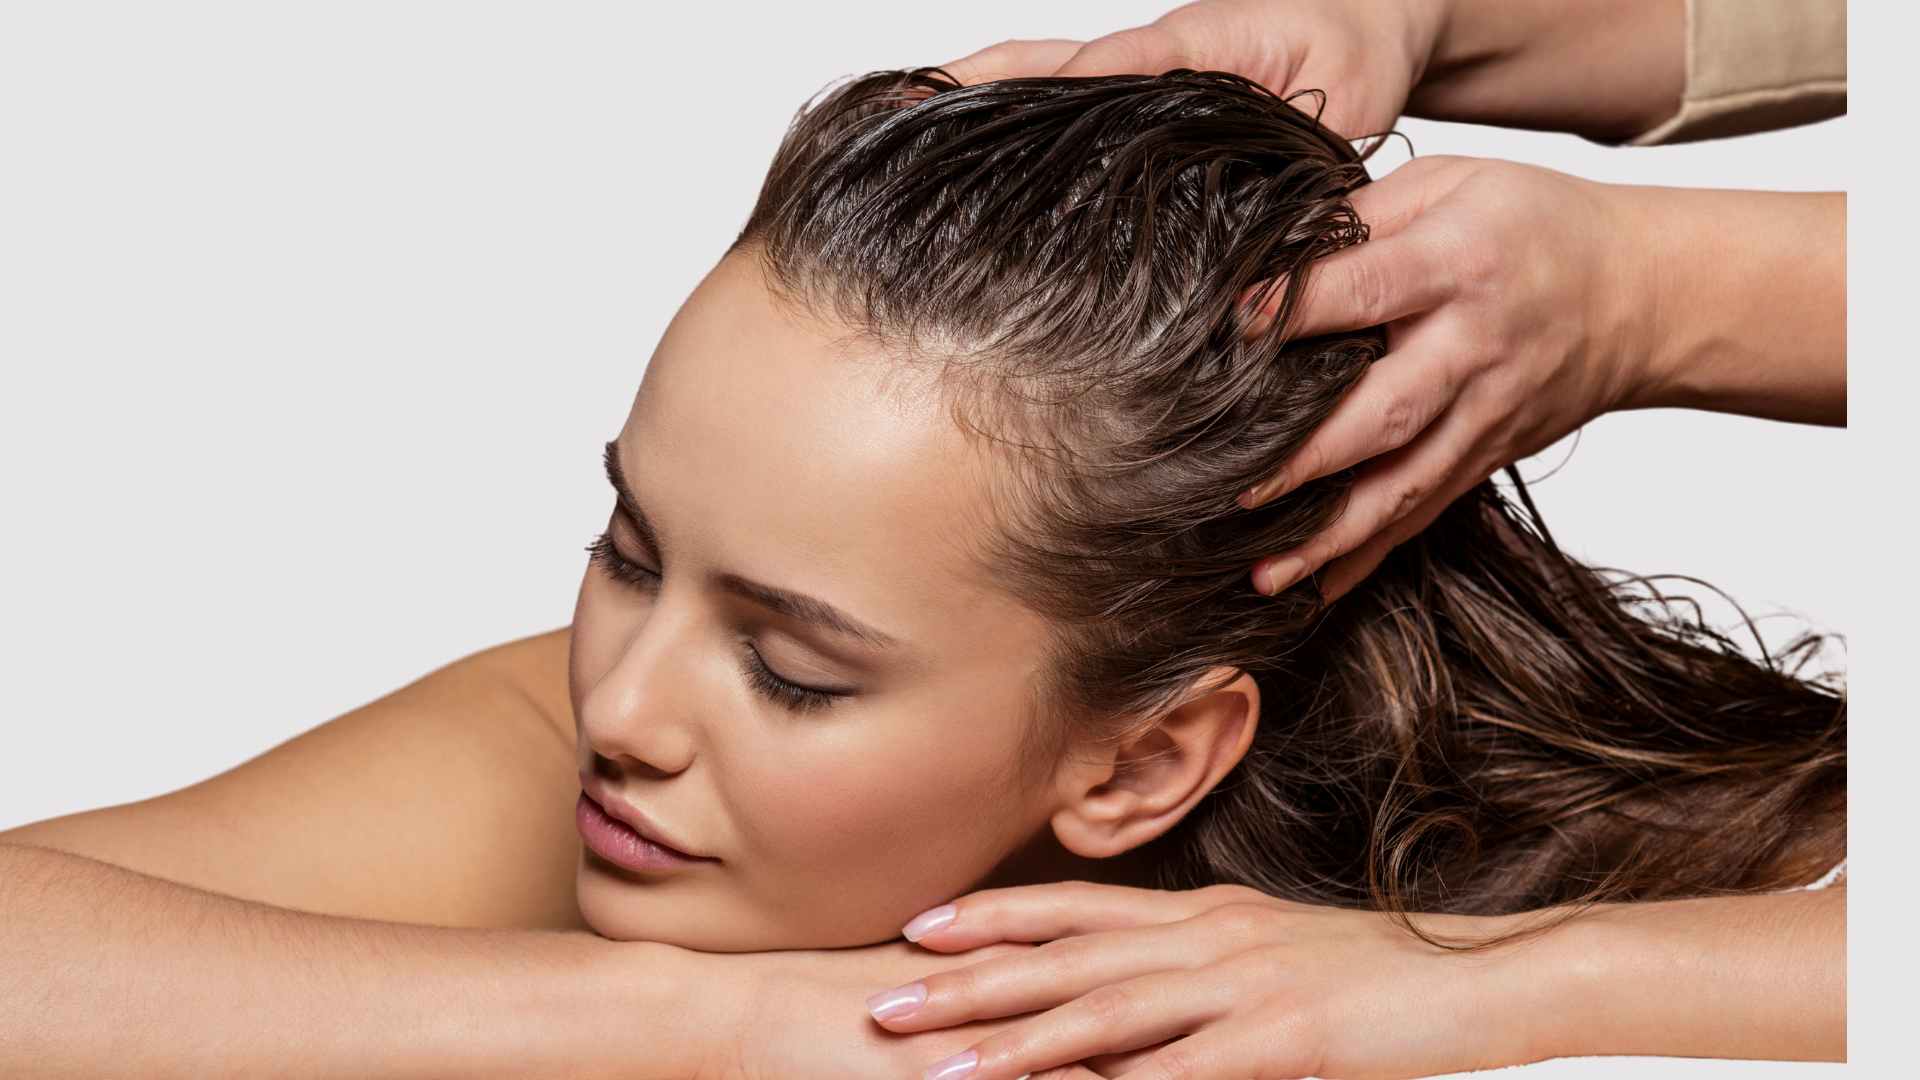 Female getting a scalp massage